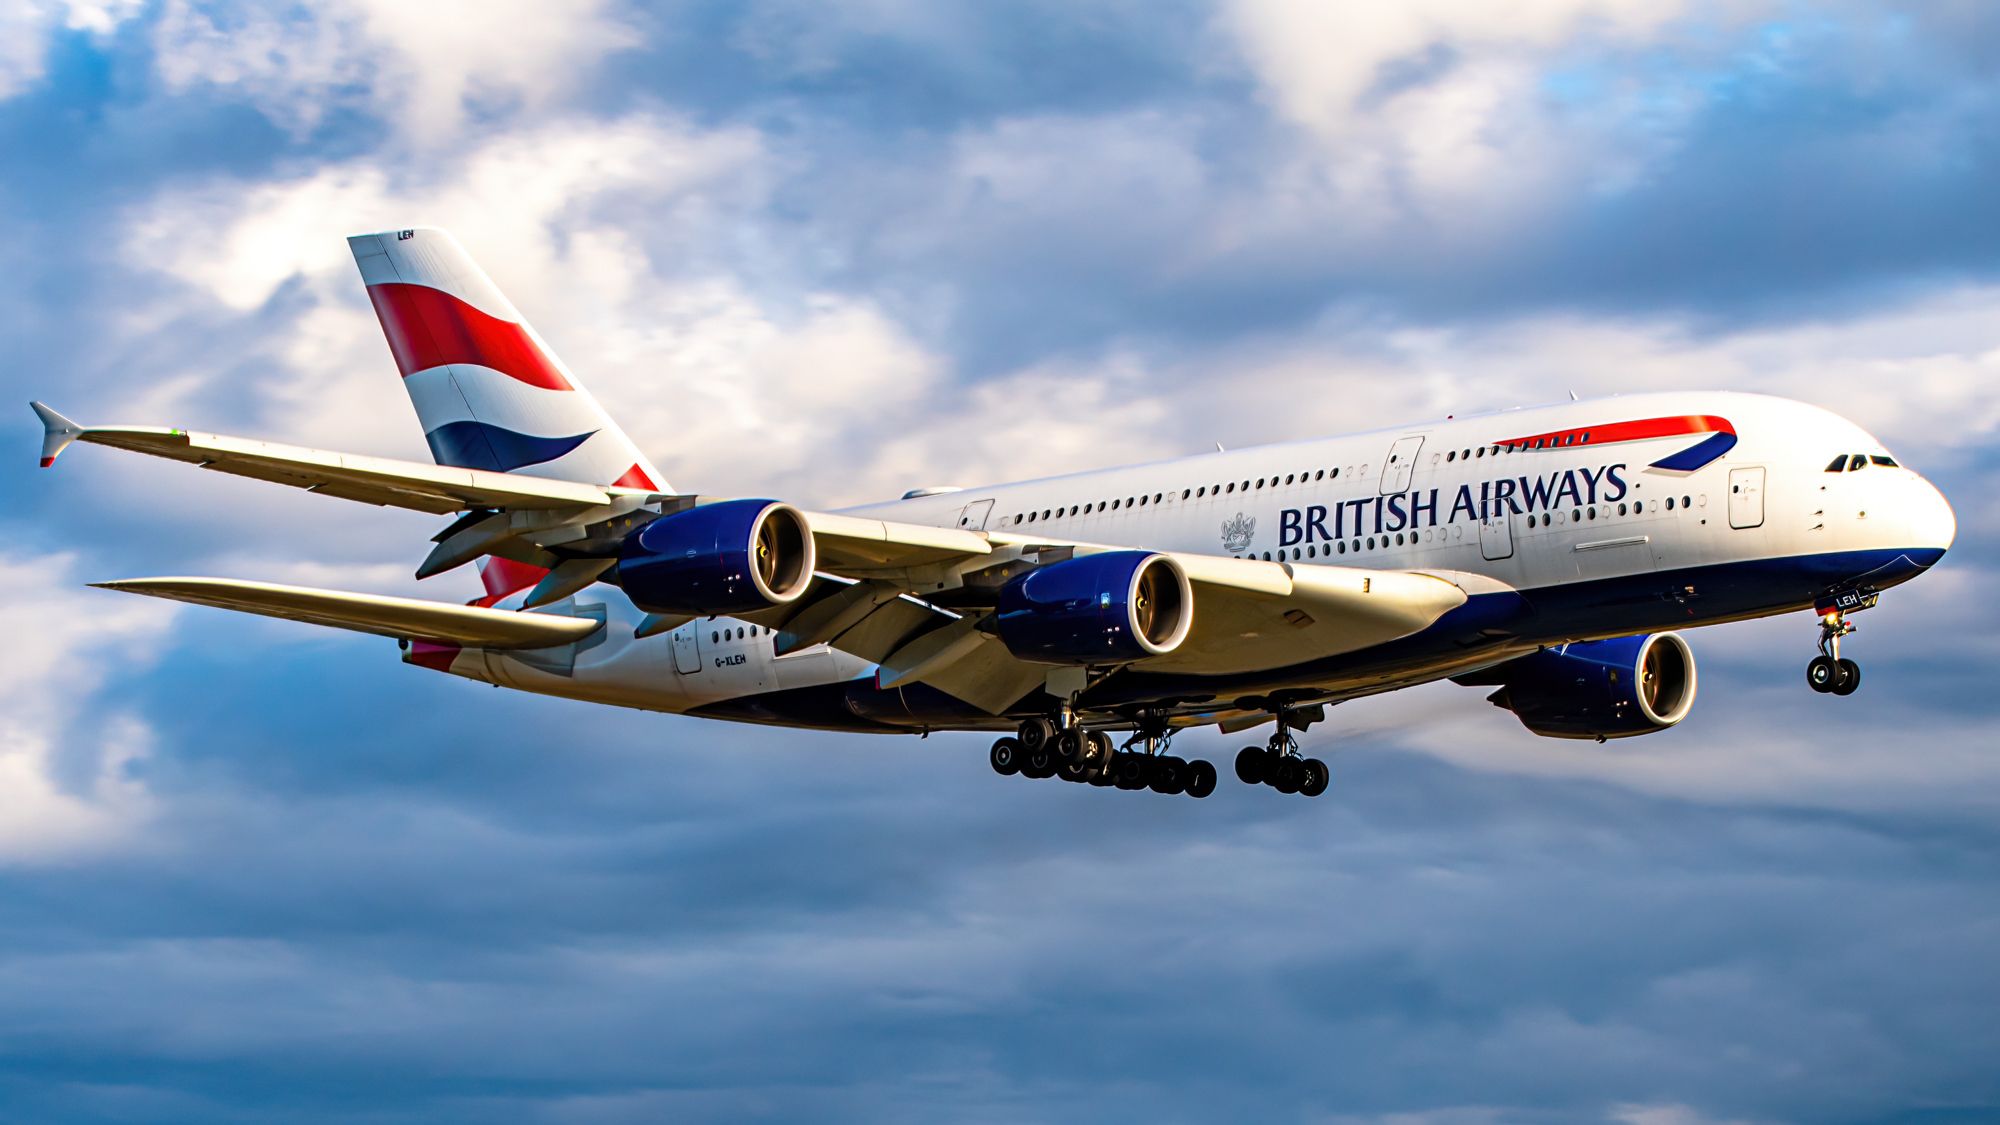 British Airways A380 on approach